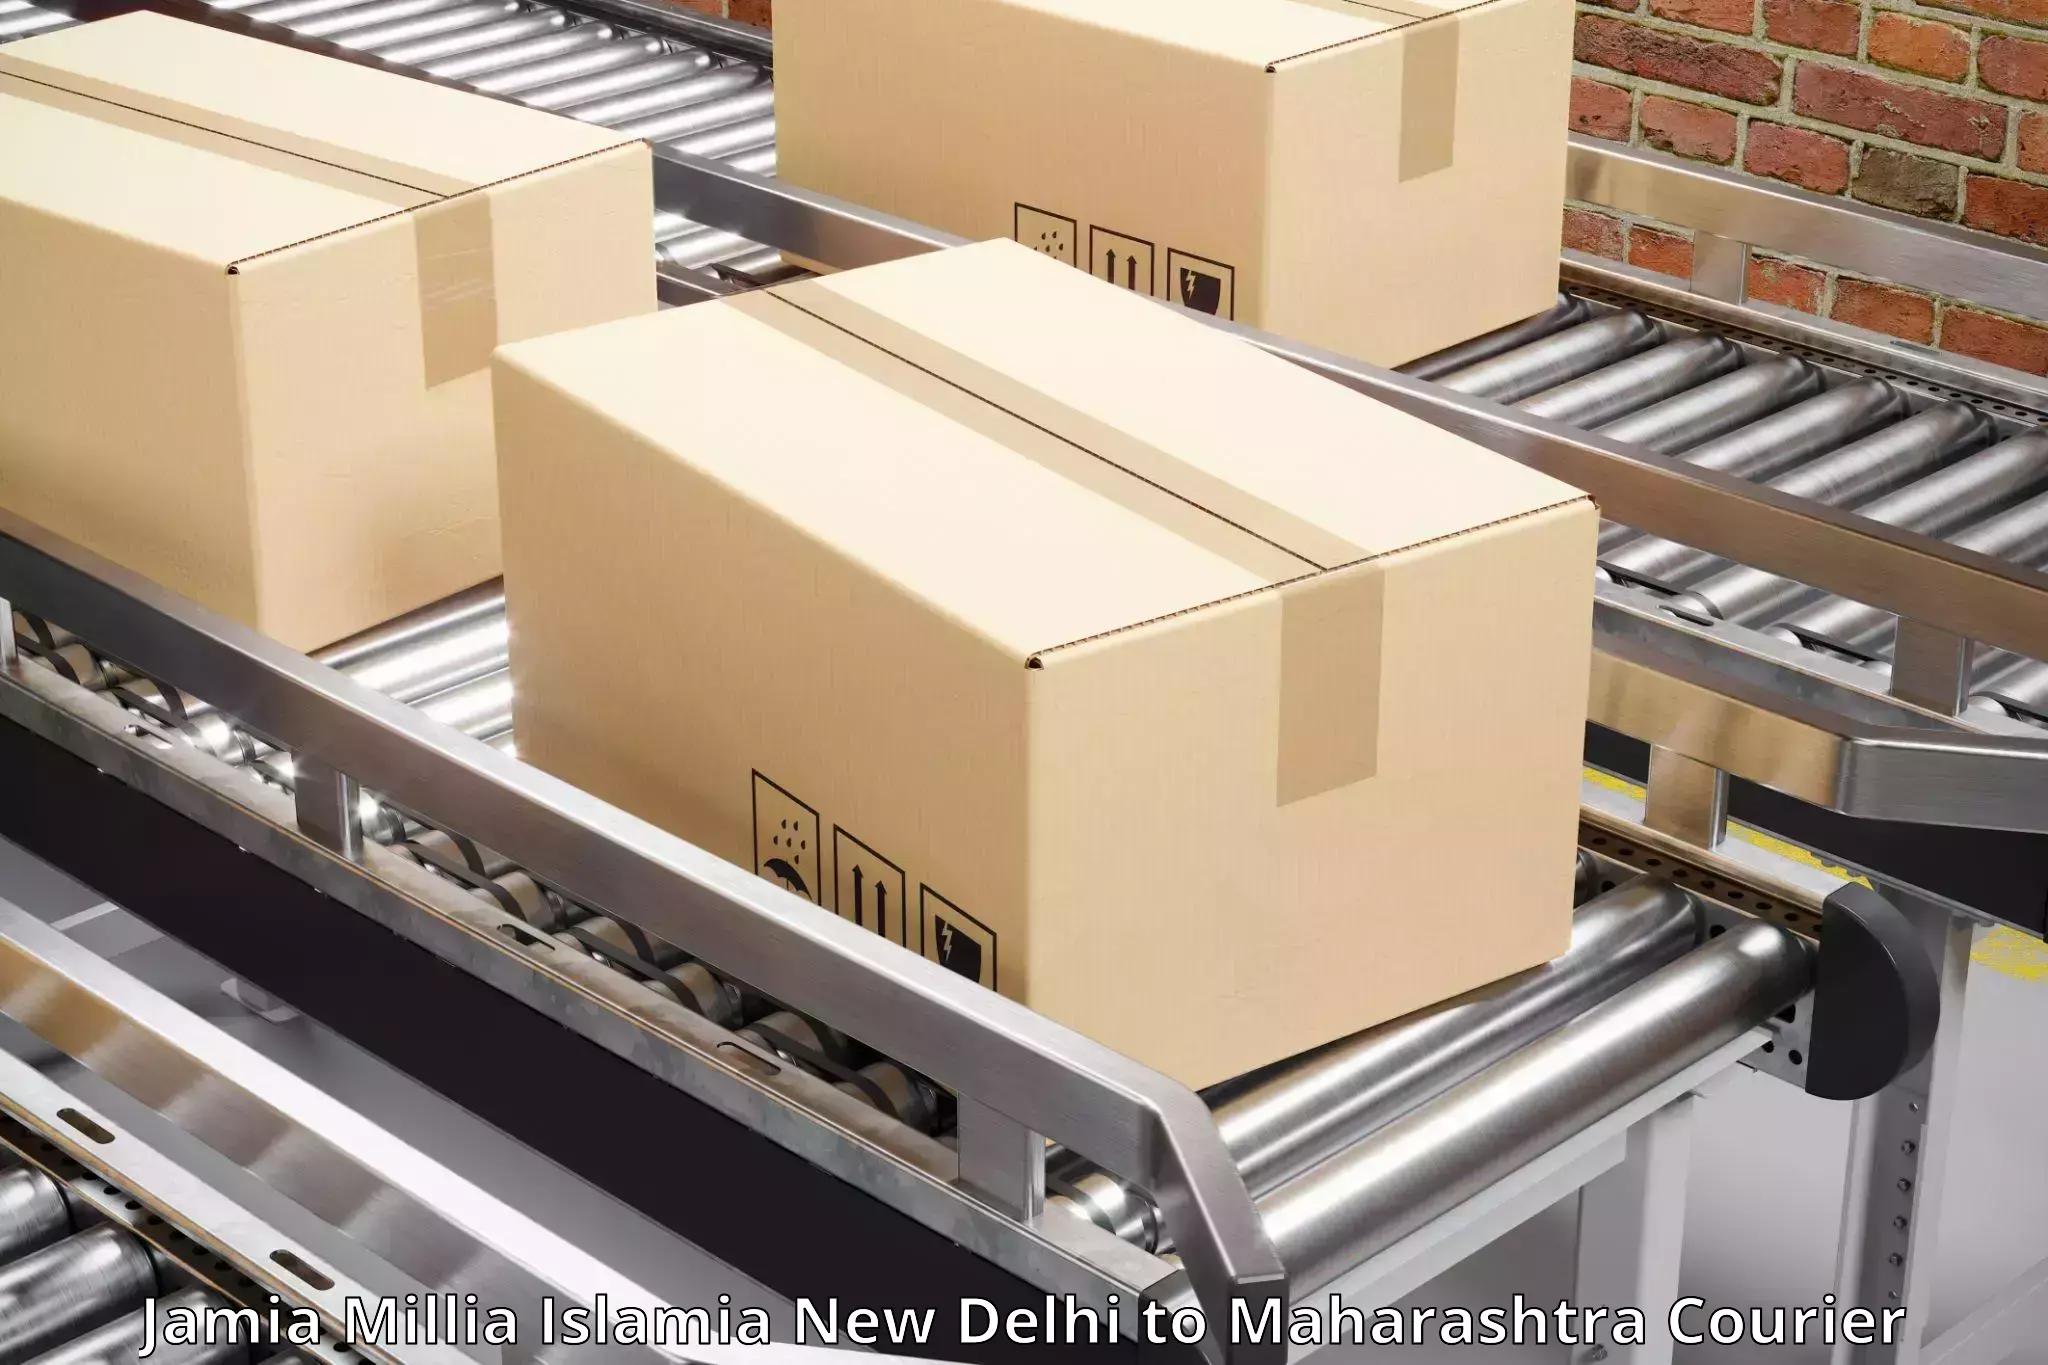 Express courier capabilities in Jamia Millia Islamia New Delhi to Mumbai Port